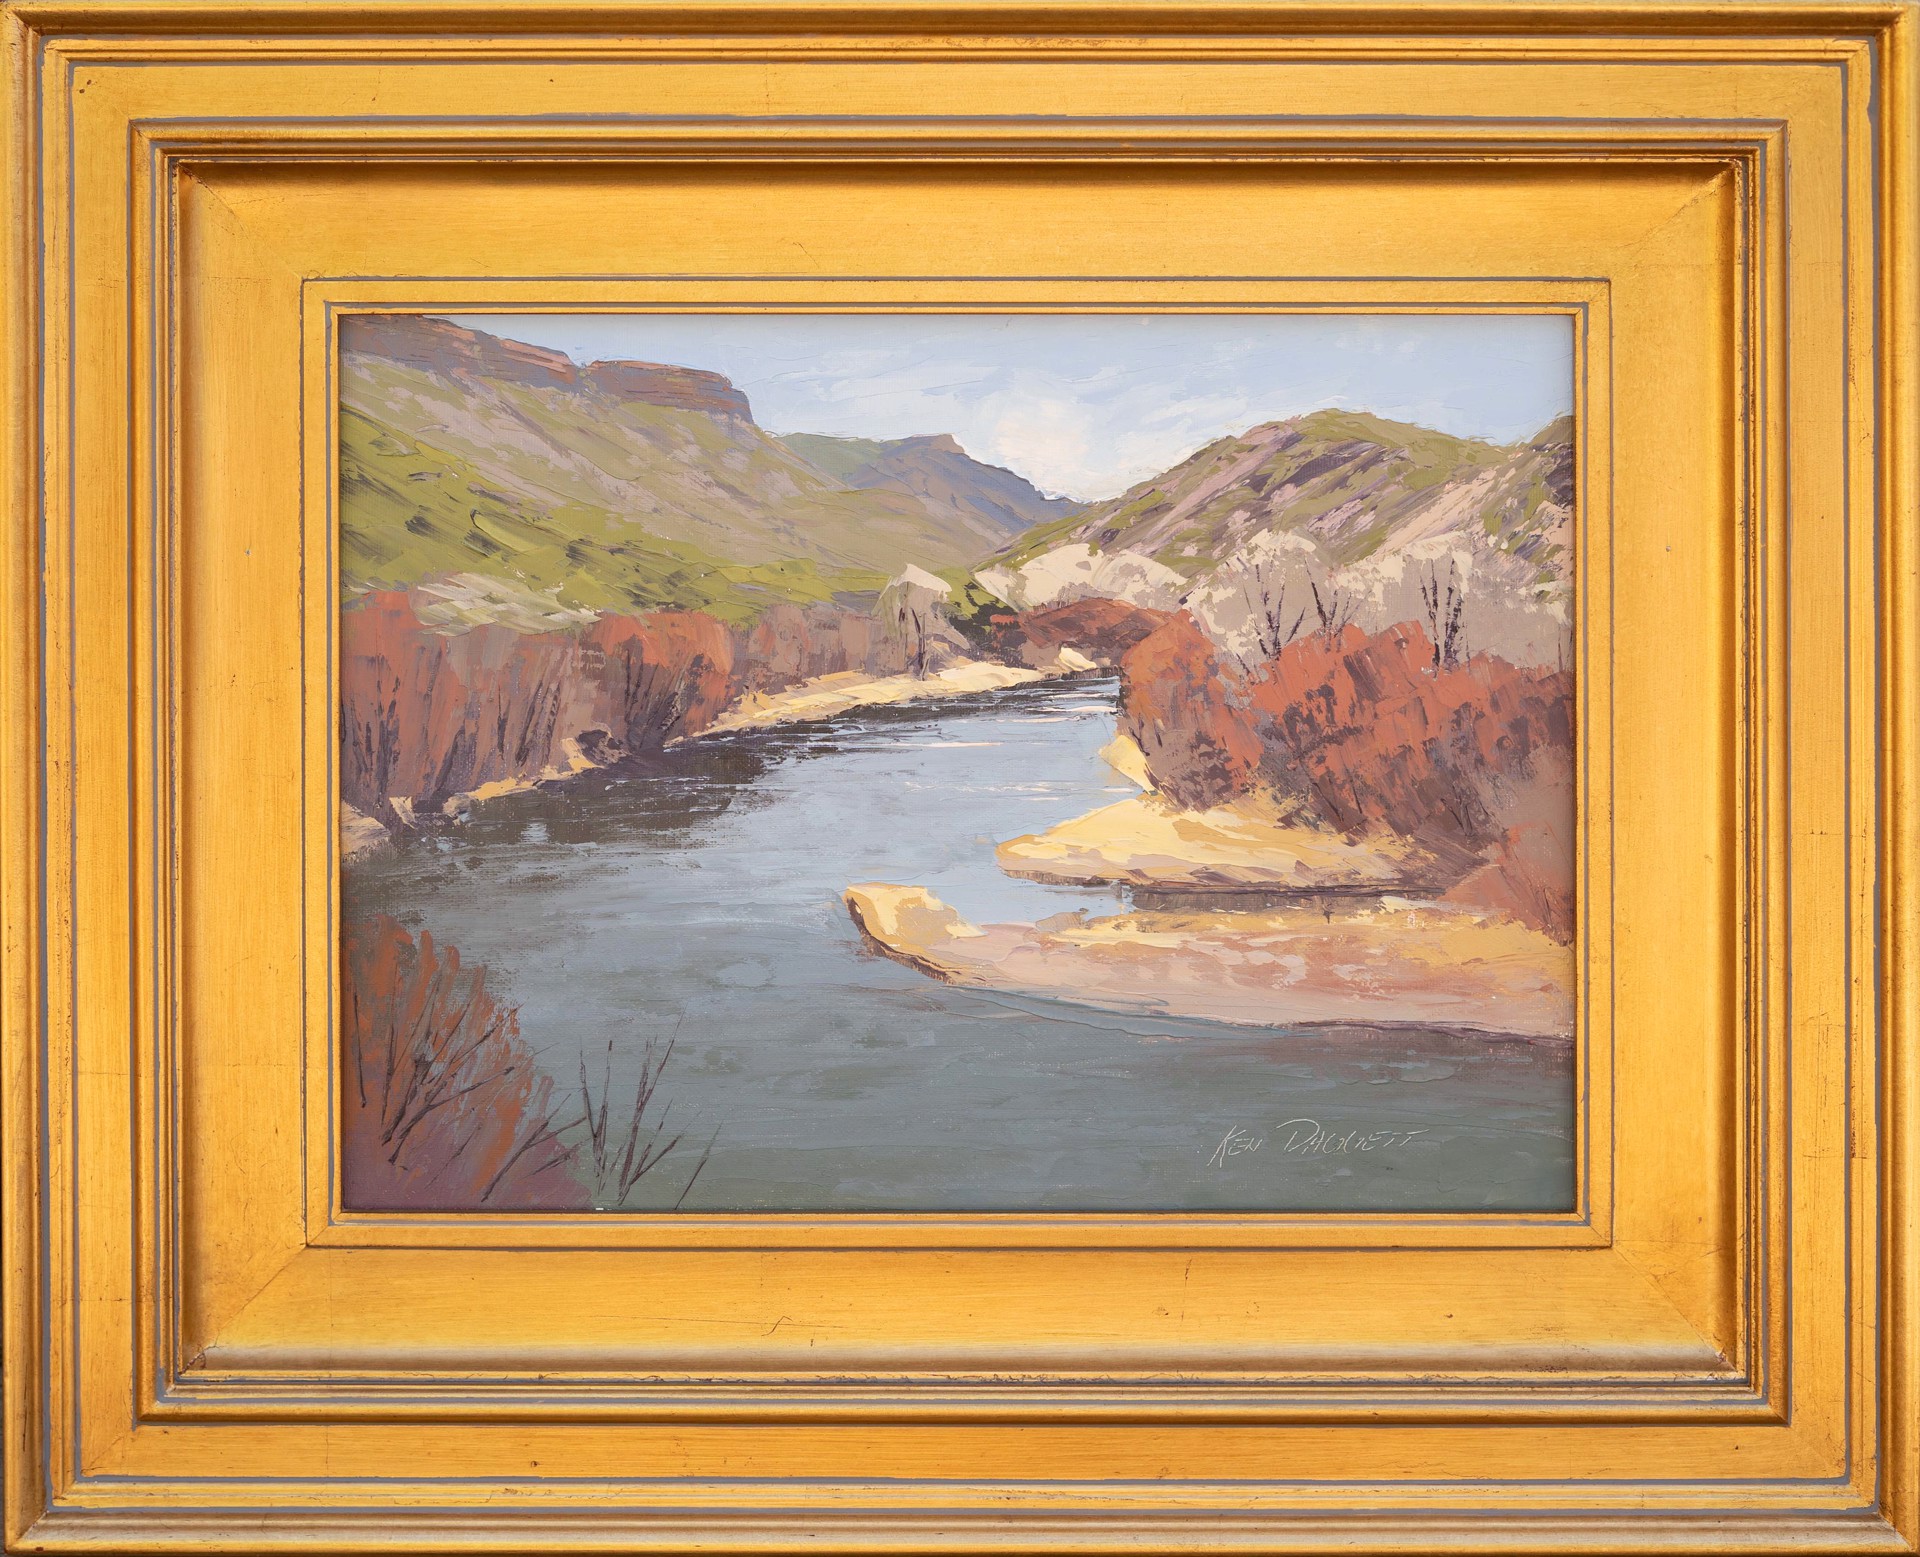 Bend in the Rio Grande by Ken Daggett